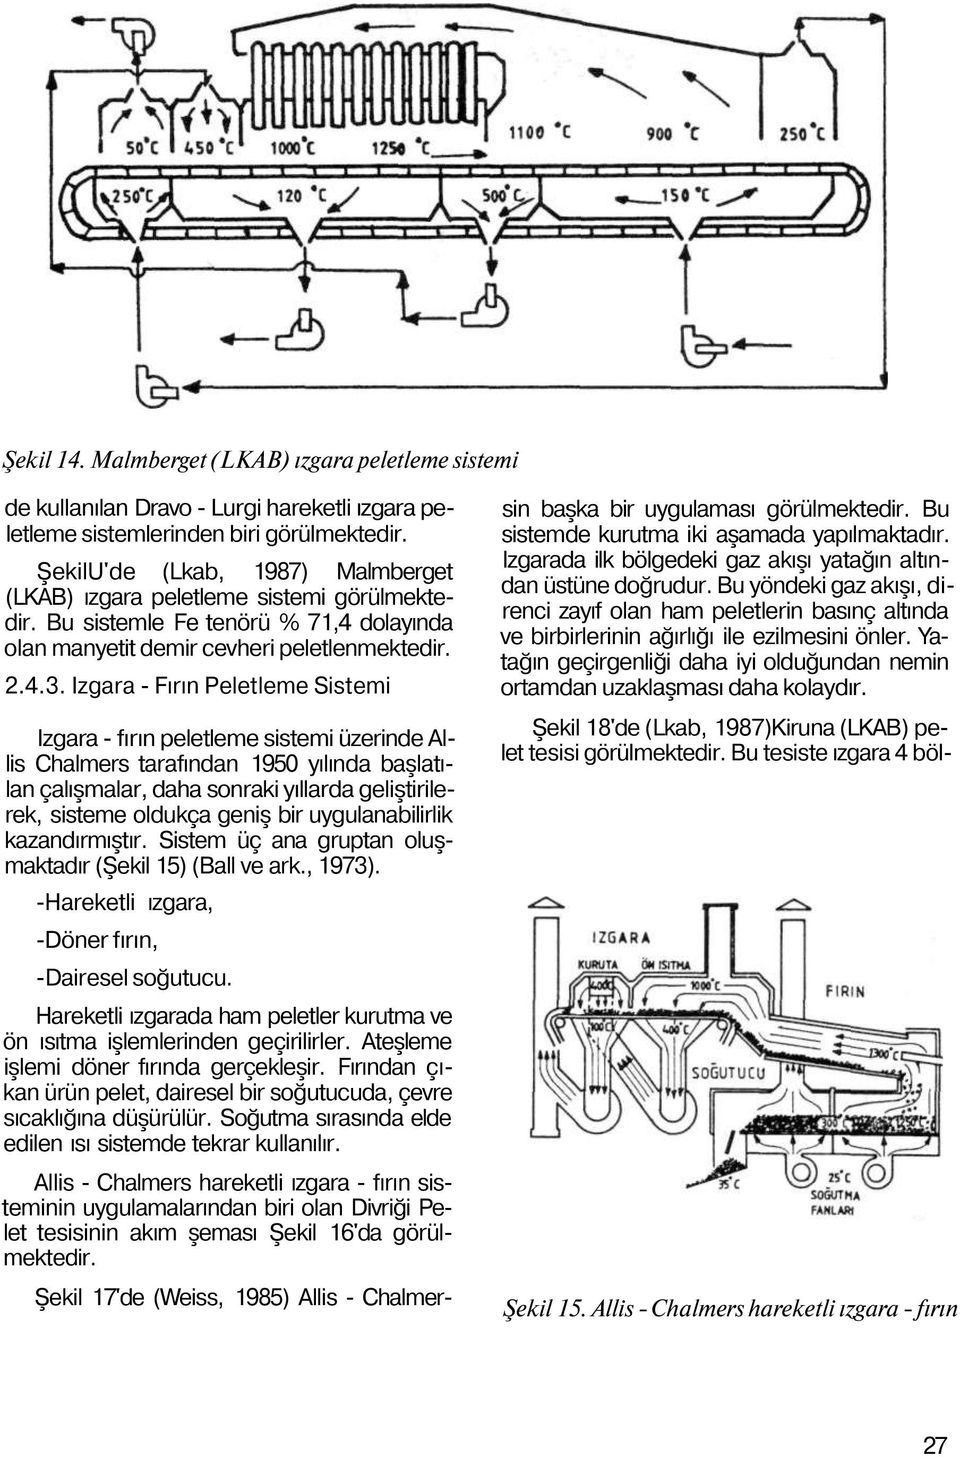 Izgara - Fırın Peletleme Sistemi Izgara - fırın peletleme sistemi üzerinde Allis Chalmers tarafından 1950 yılında başlatılan çalışmalar, daha sonraki yıllarda geliştirilerek, sisteme oldukça geniş